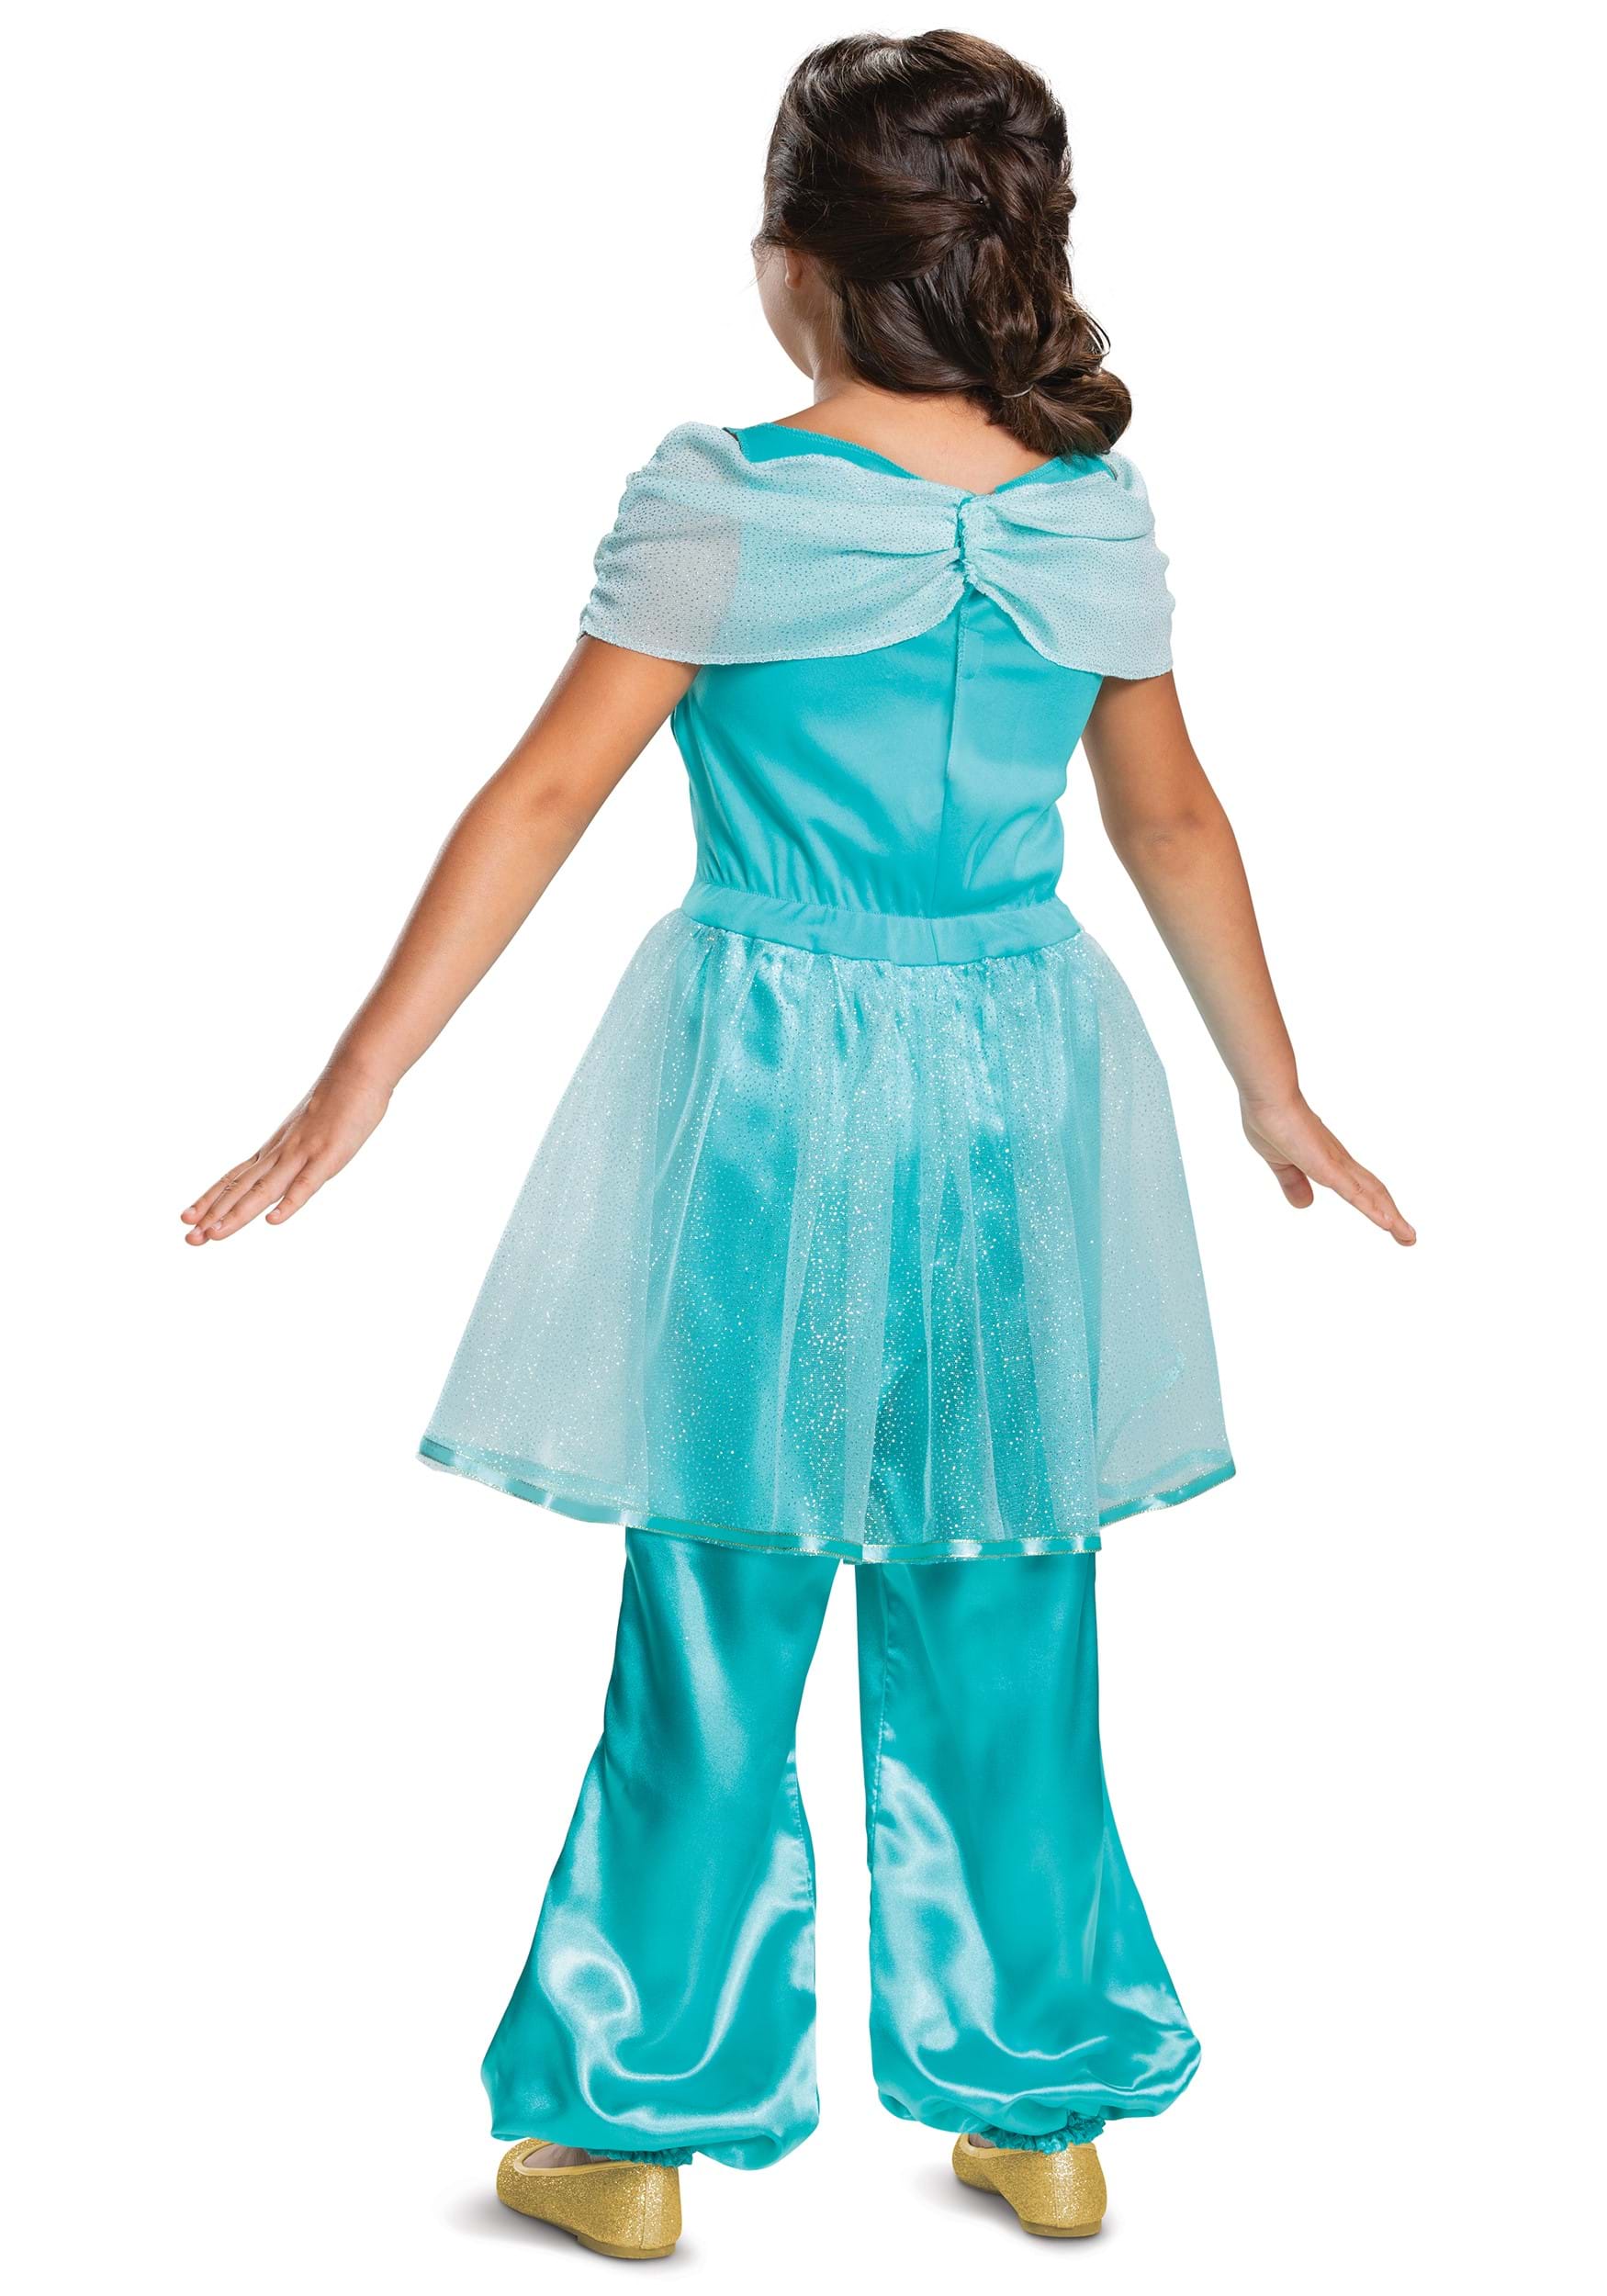 Girls Aladdin Jasmine Classic Costume